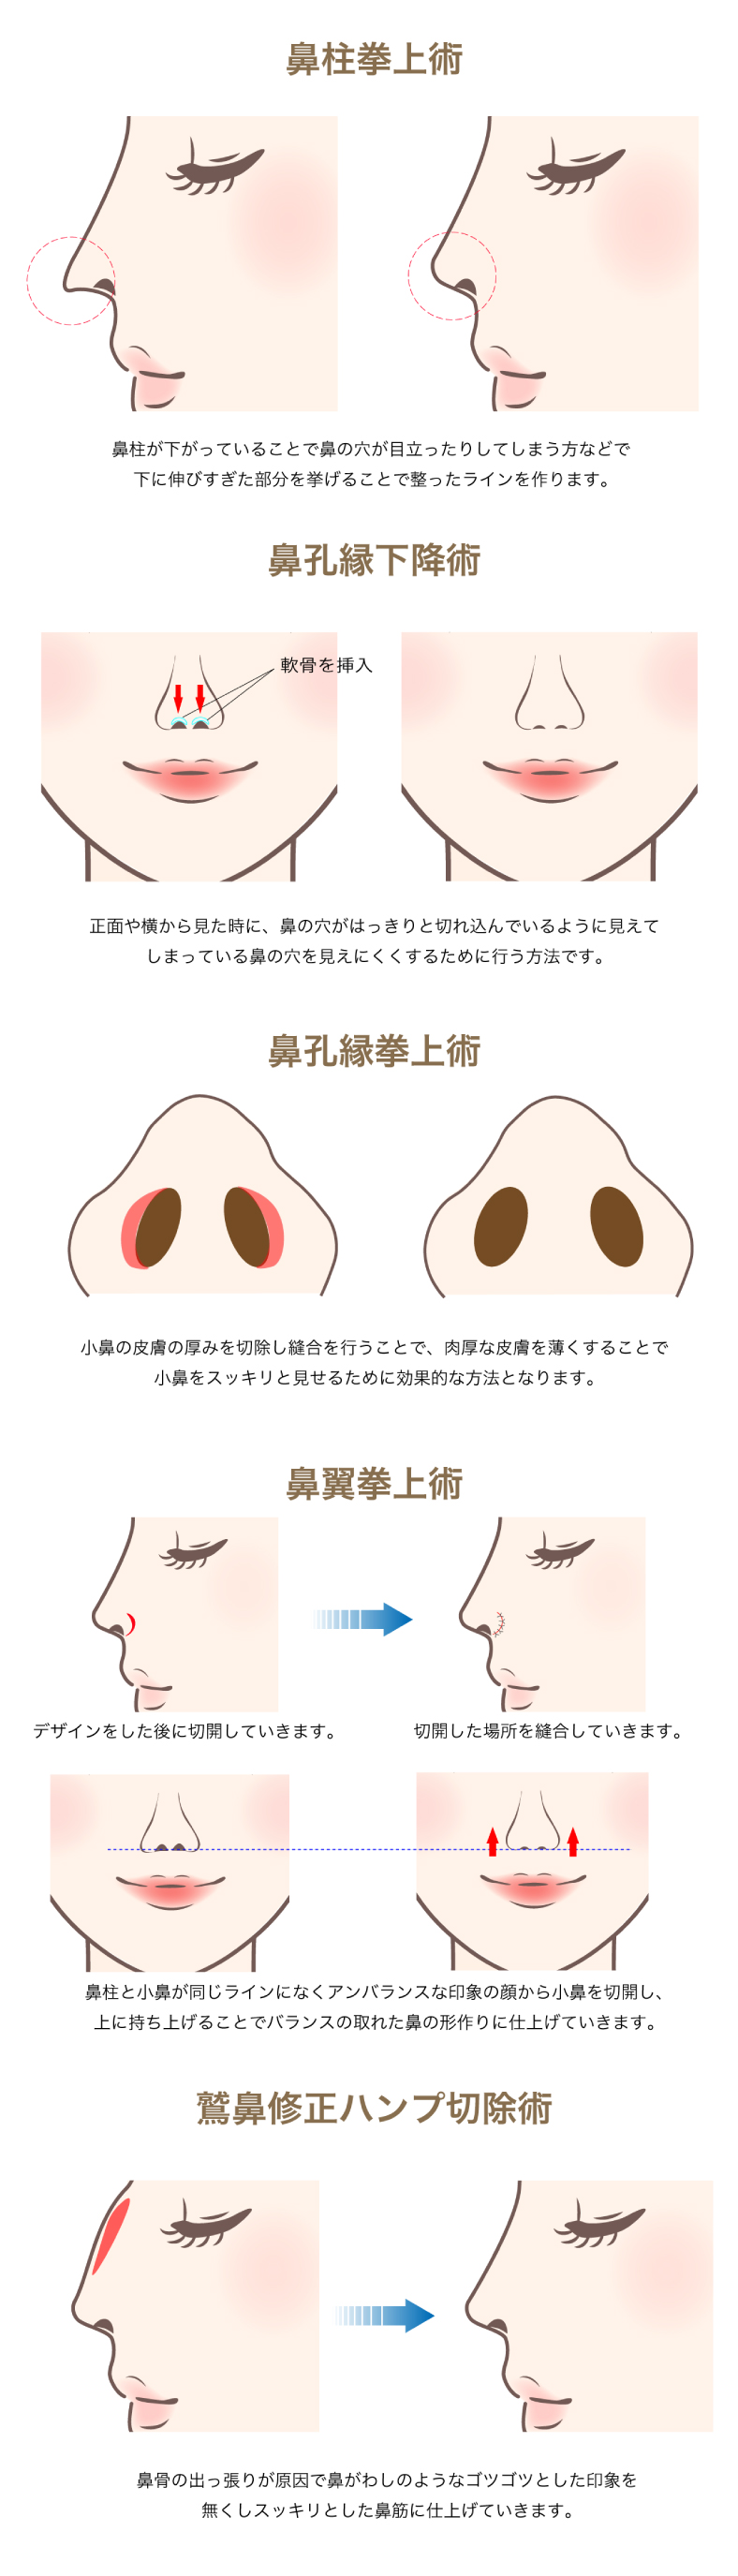 鼻の手術について